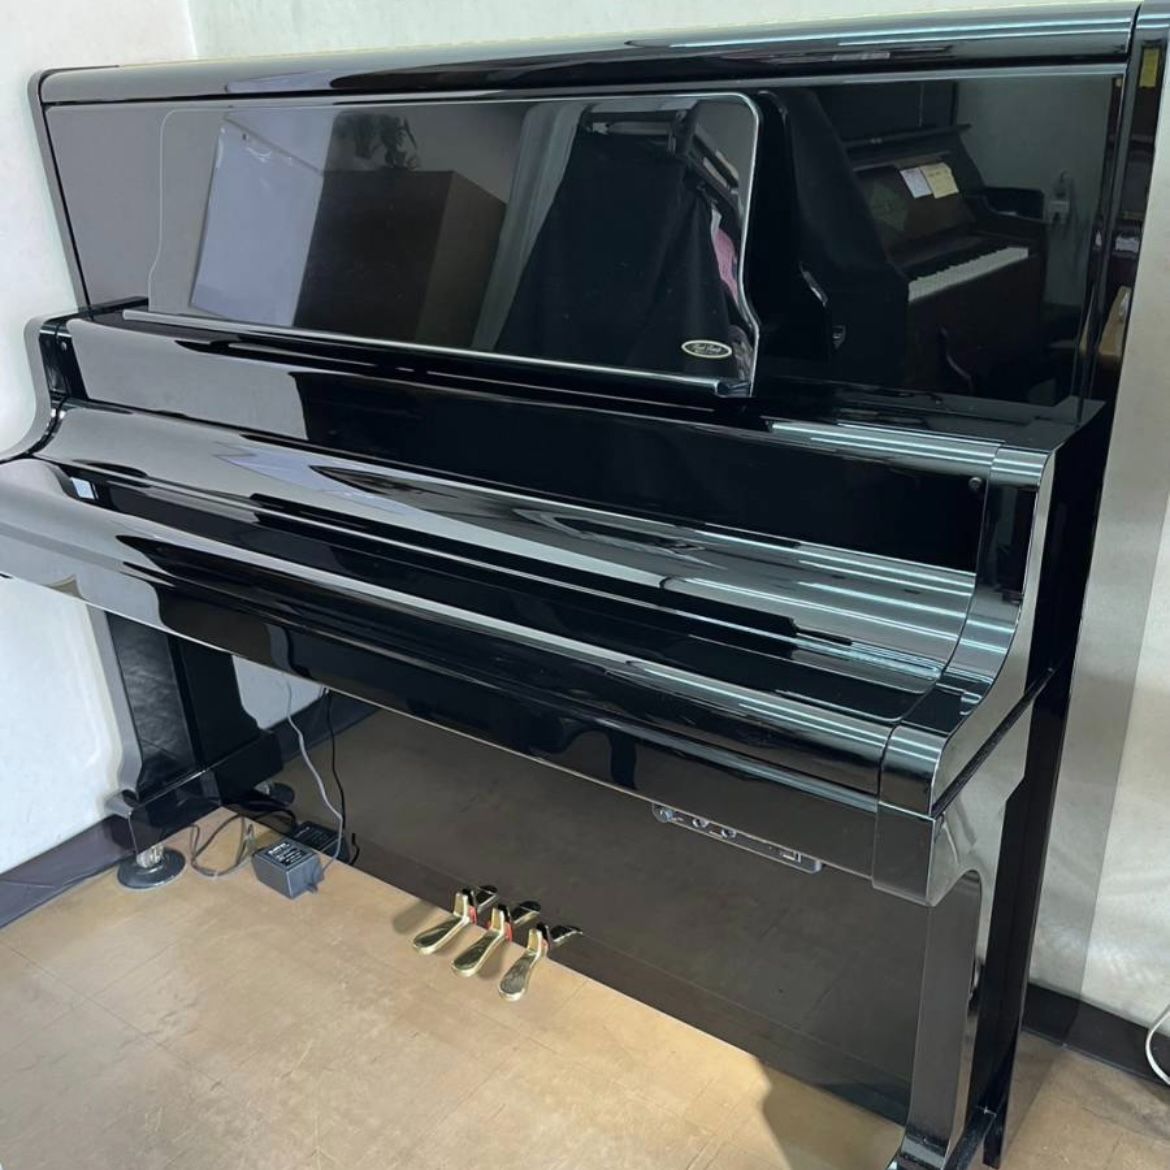 KAWAIアップライトピアノ 運送・調律調整込 SOLD OUT - 鍵盤楽器、ピアノ